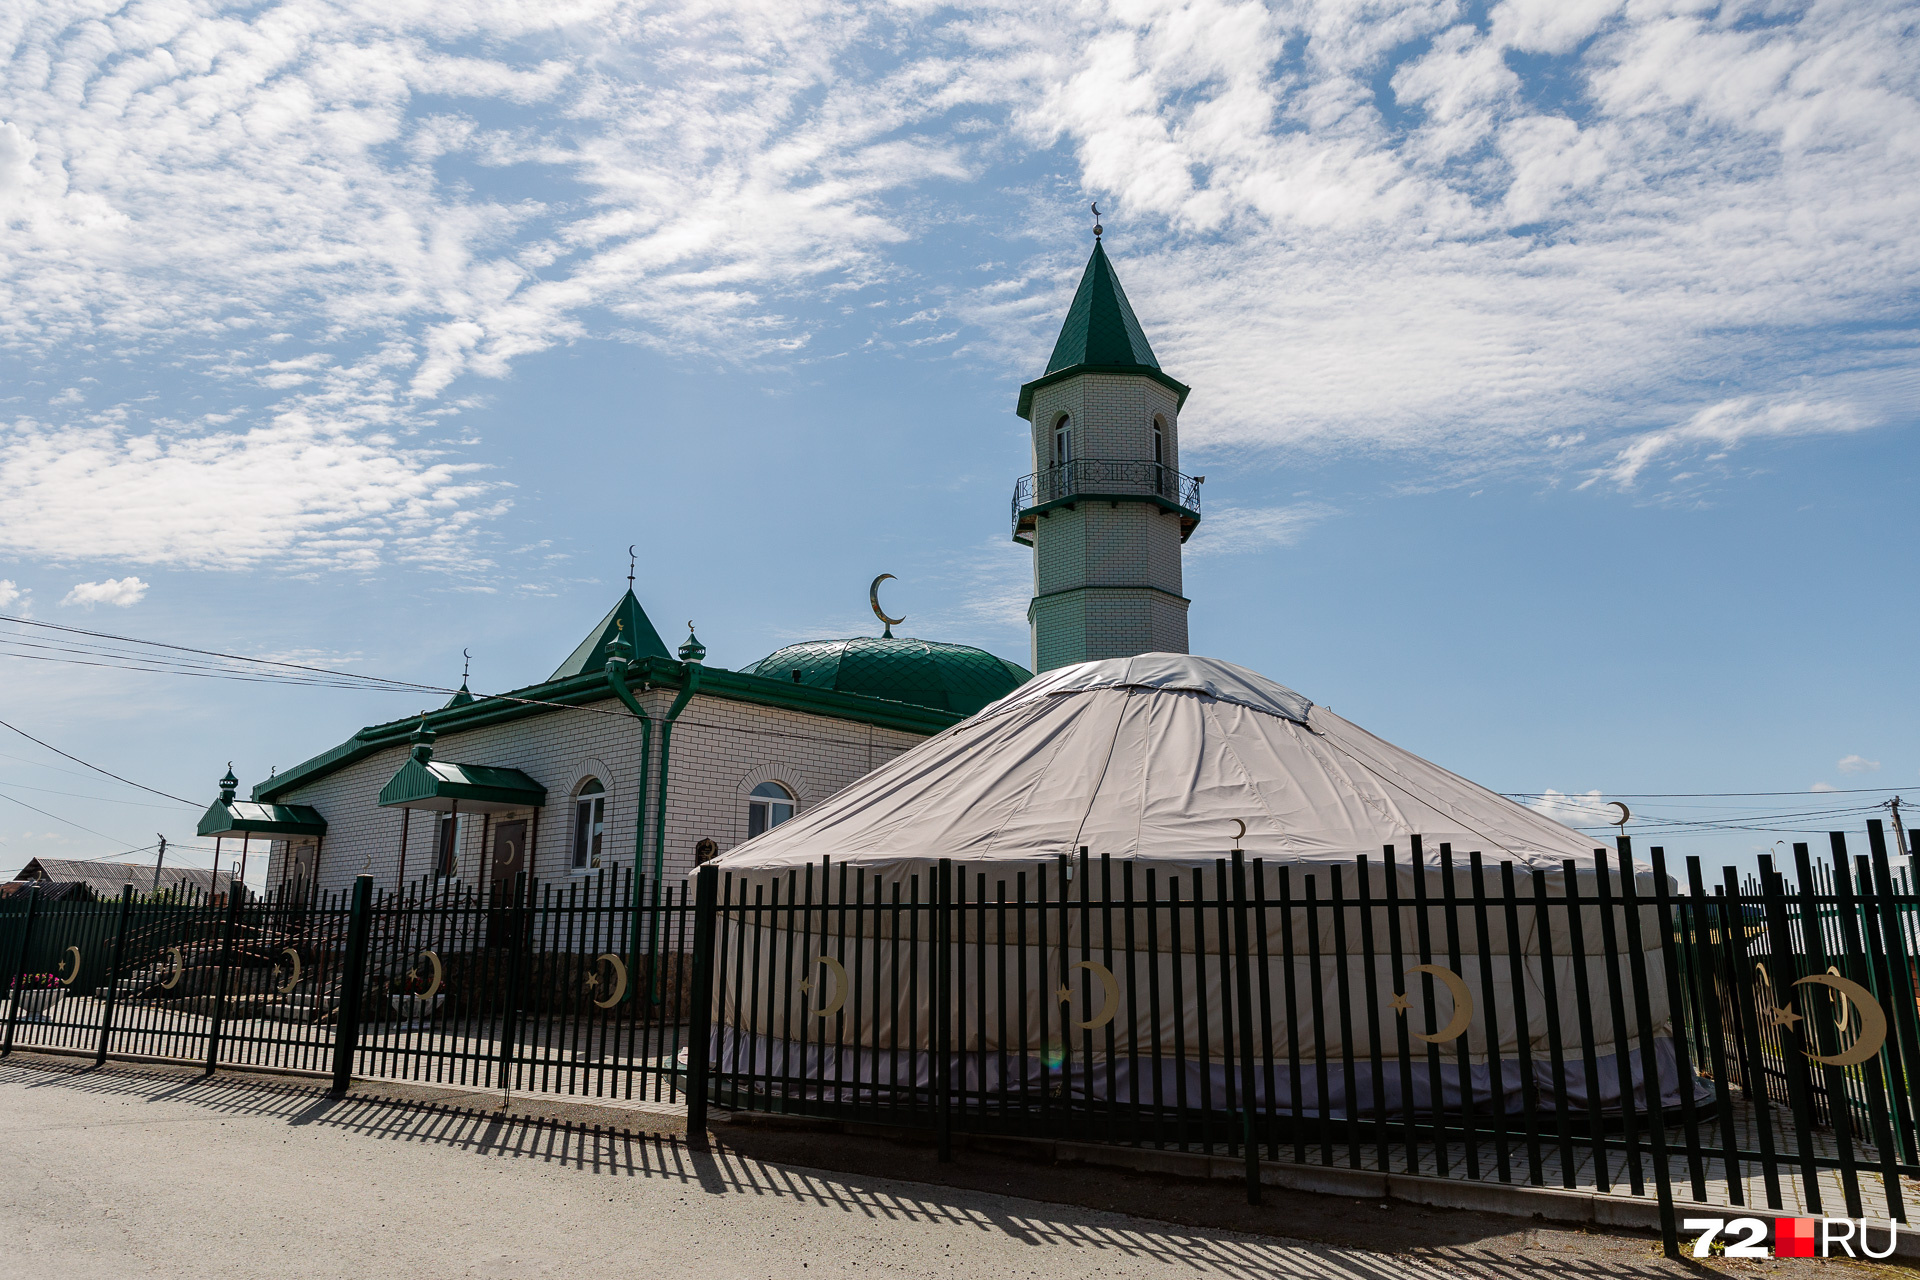 Сегодня в поселке стоит новая красивая мечеть. Здание возвели в 1991 году, а в <nobr class="_">2016-м</nobr> отреставрировали по инициативе экс-губернатора Владимира Якушева